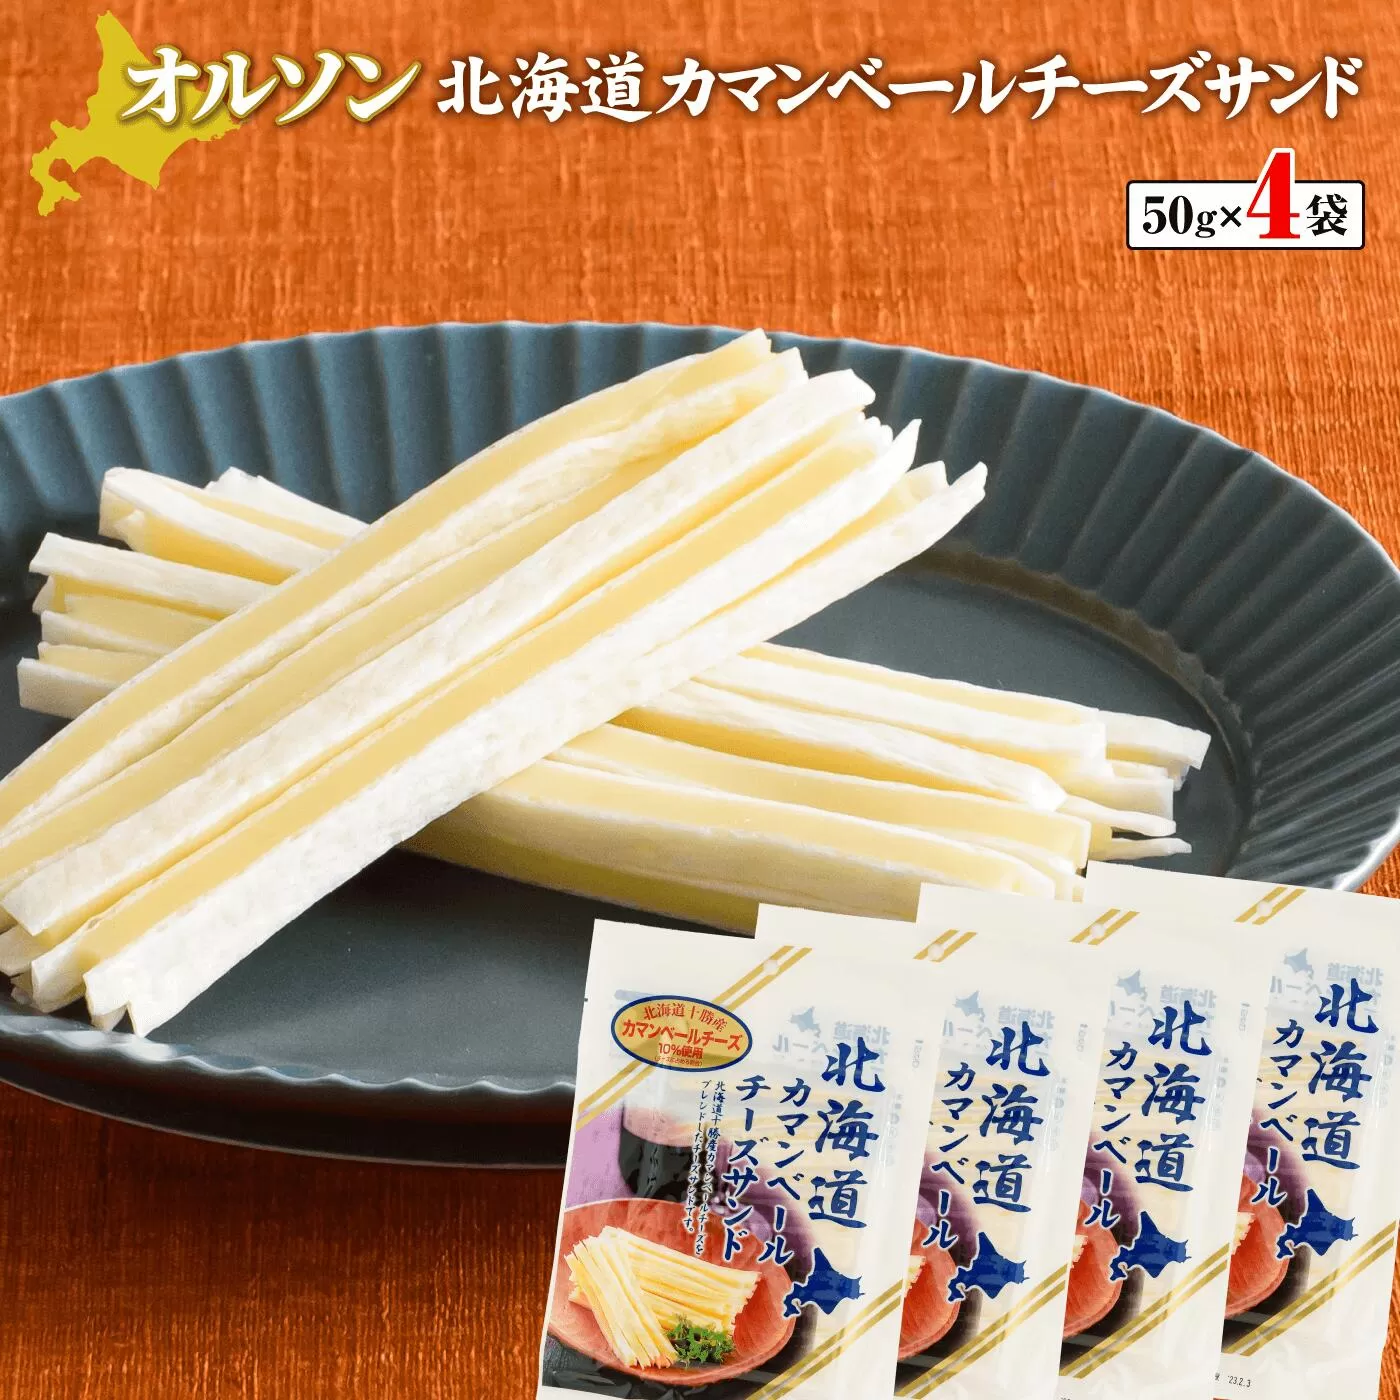 北海道カマンベールチーズサンド 50g×4袋《北海道恵庭市》【04012】